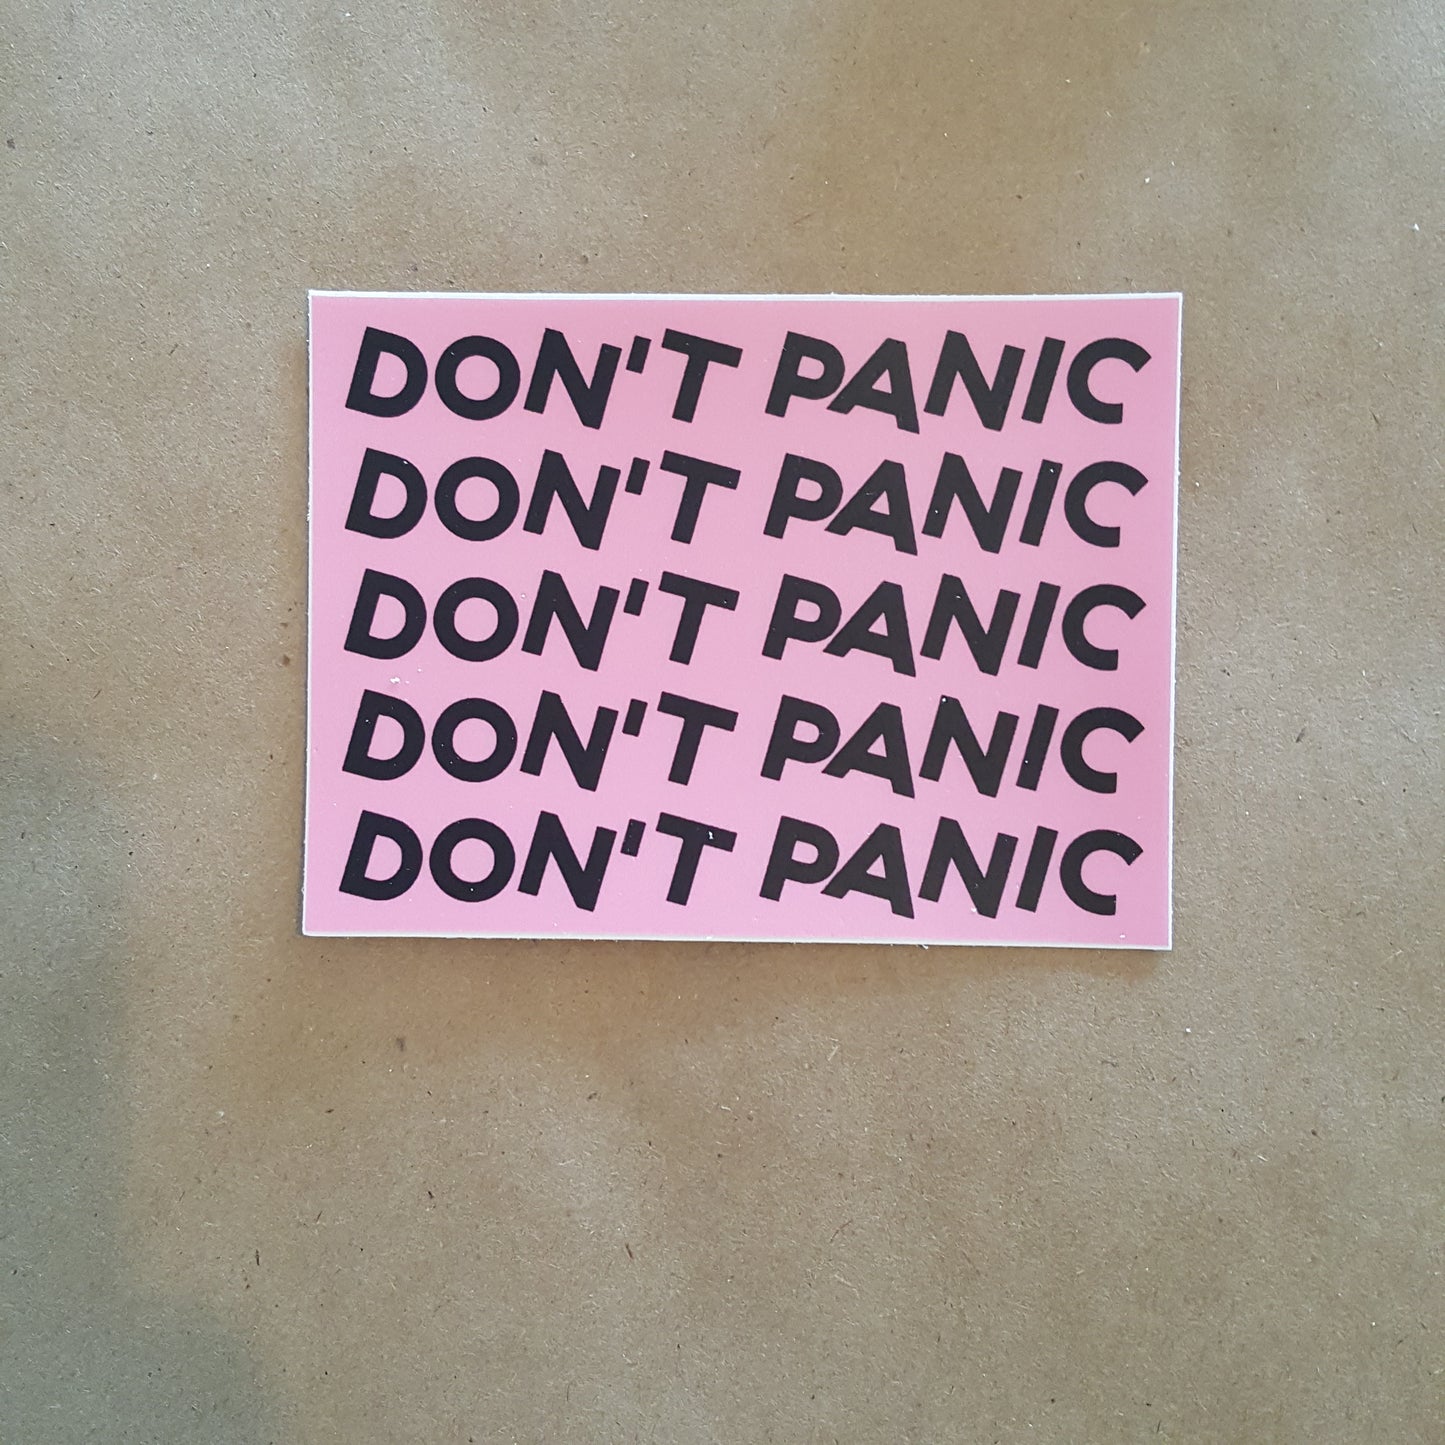 IRWIN, Todd: DON'T PANIC Sticker